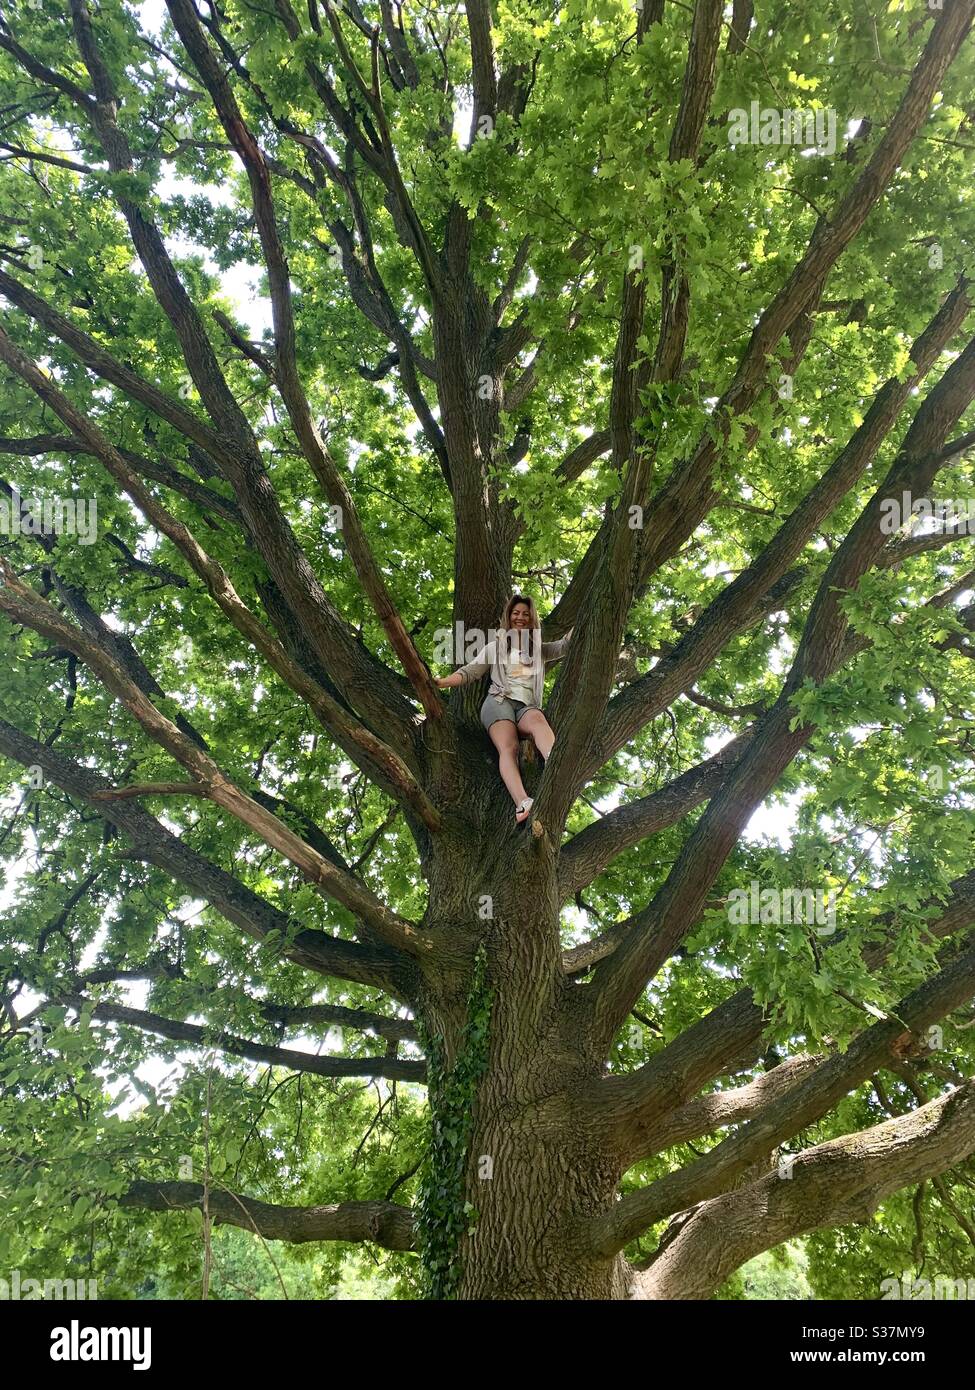 Girl in oak tree Stock Photo